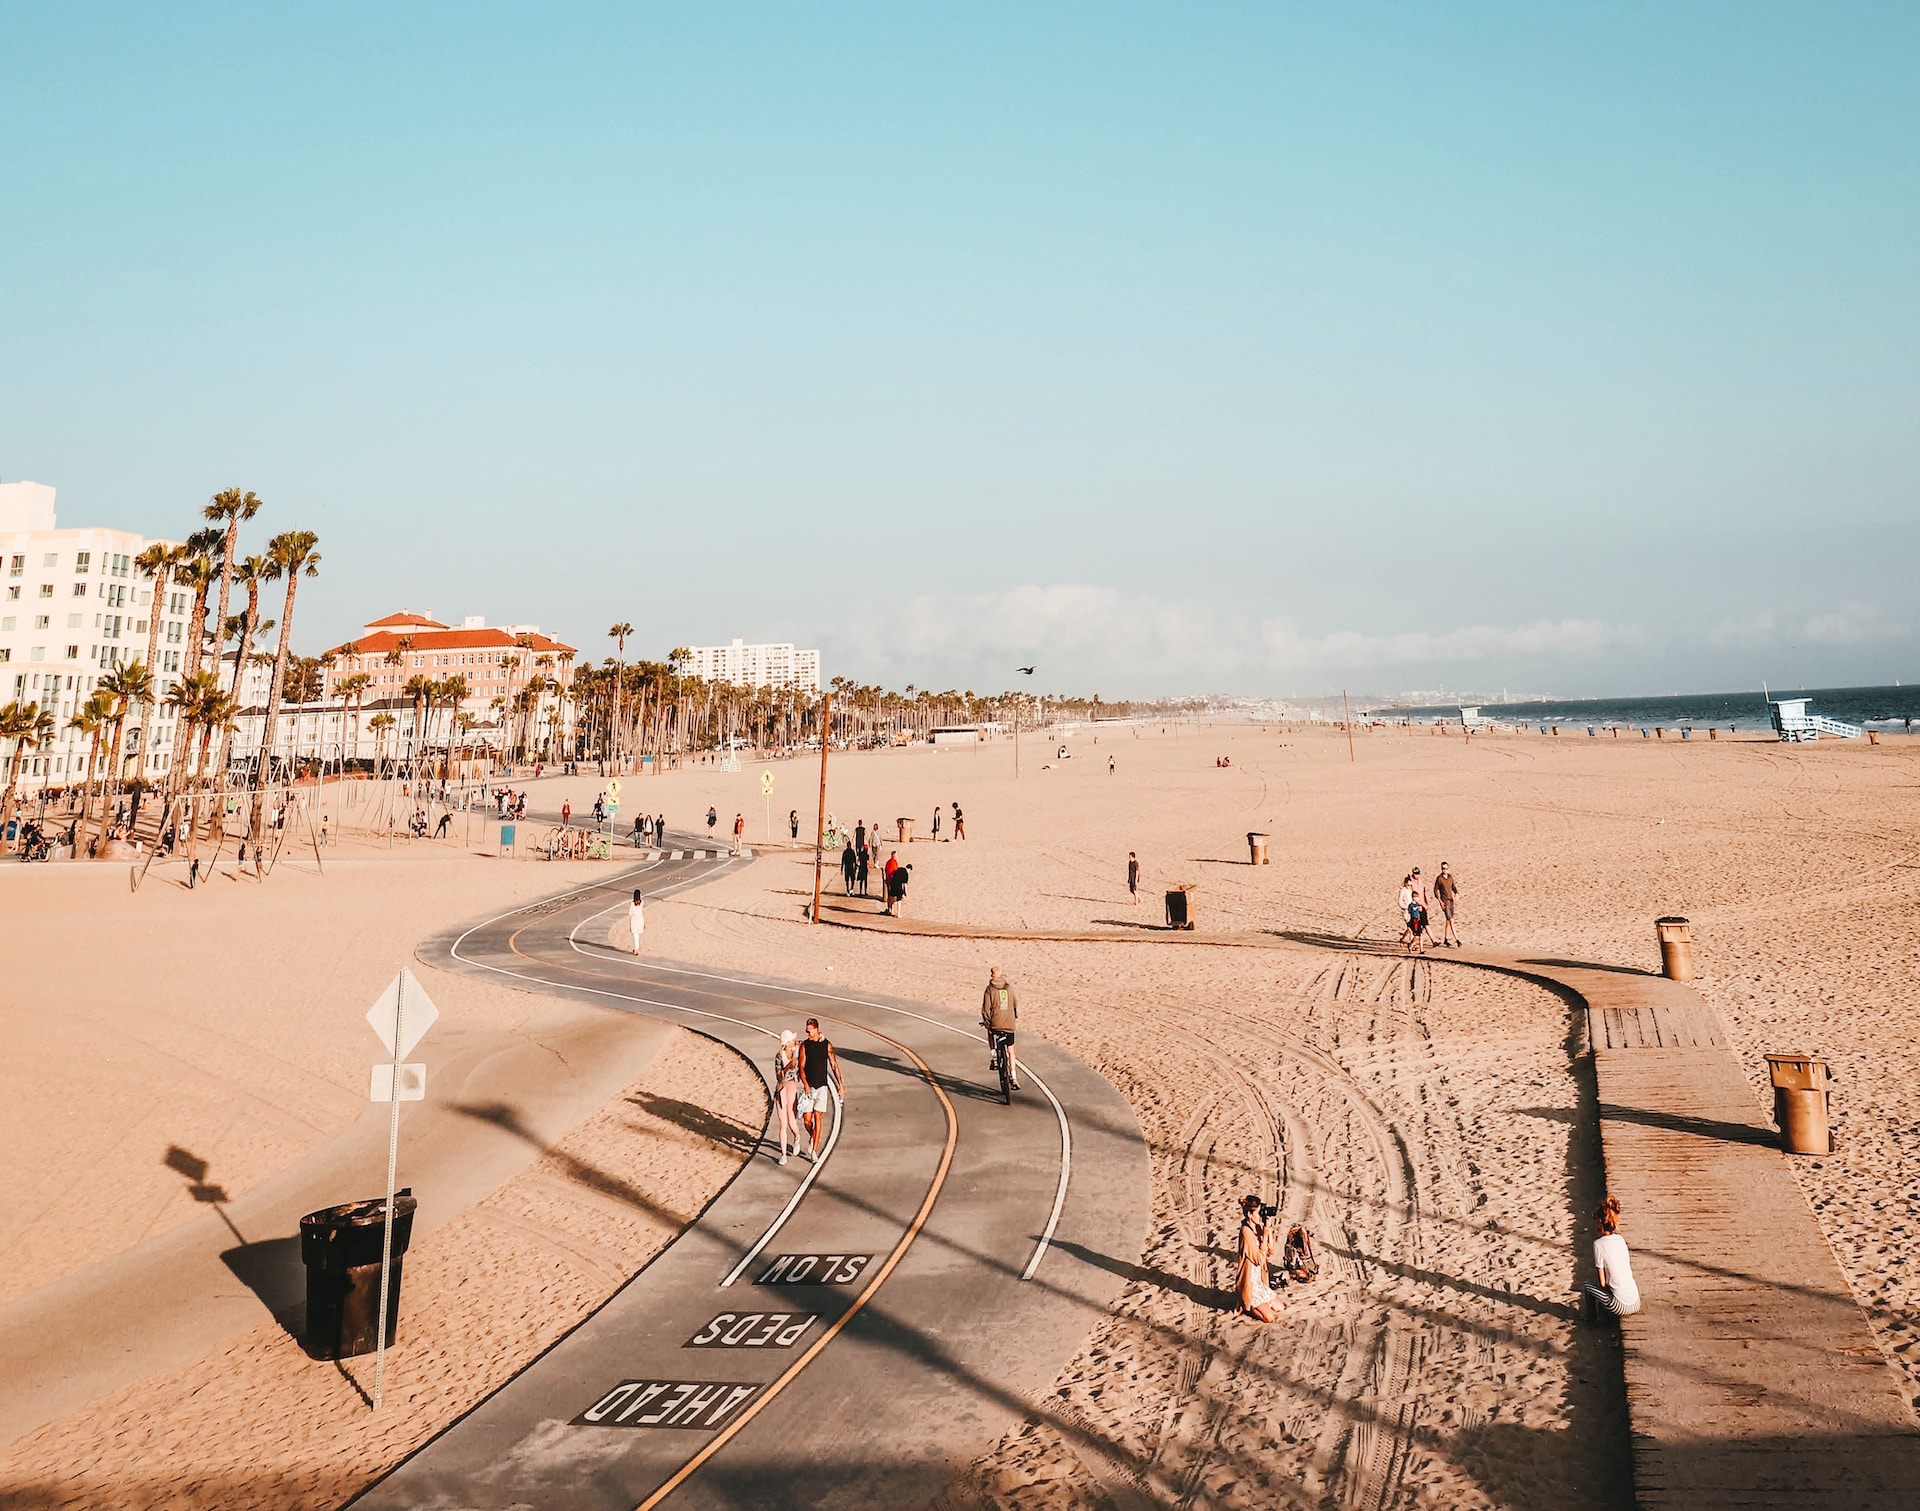 Featured Beach: Santa Monica Beach, California